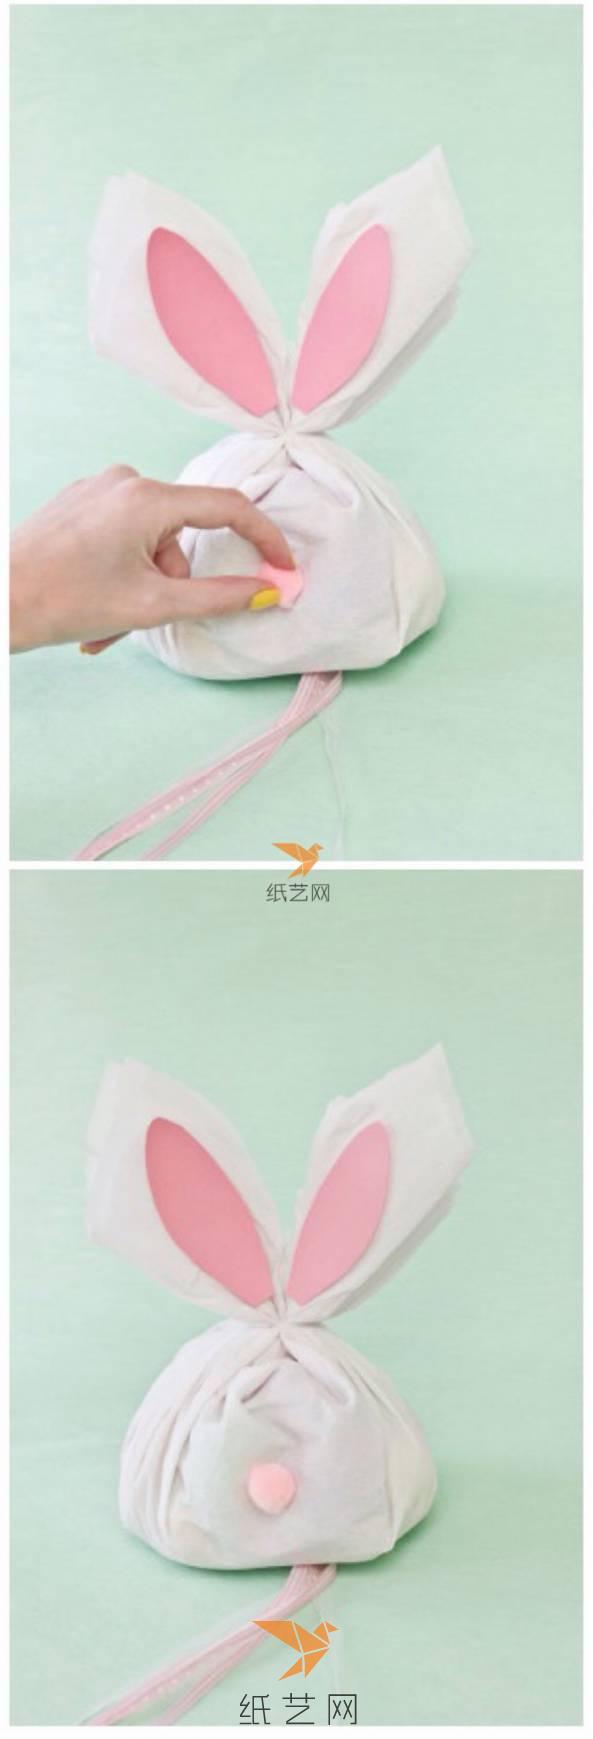 布袋上的兔子耳朵贴上粉色纸片